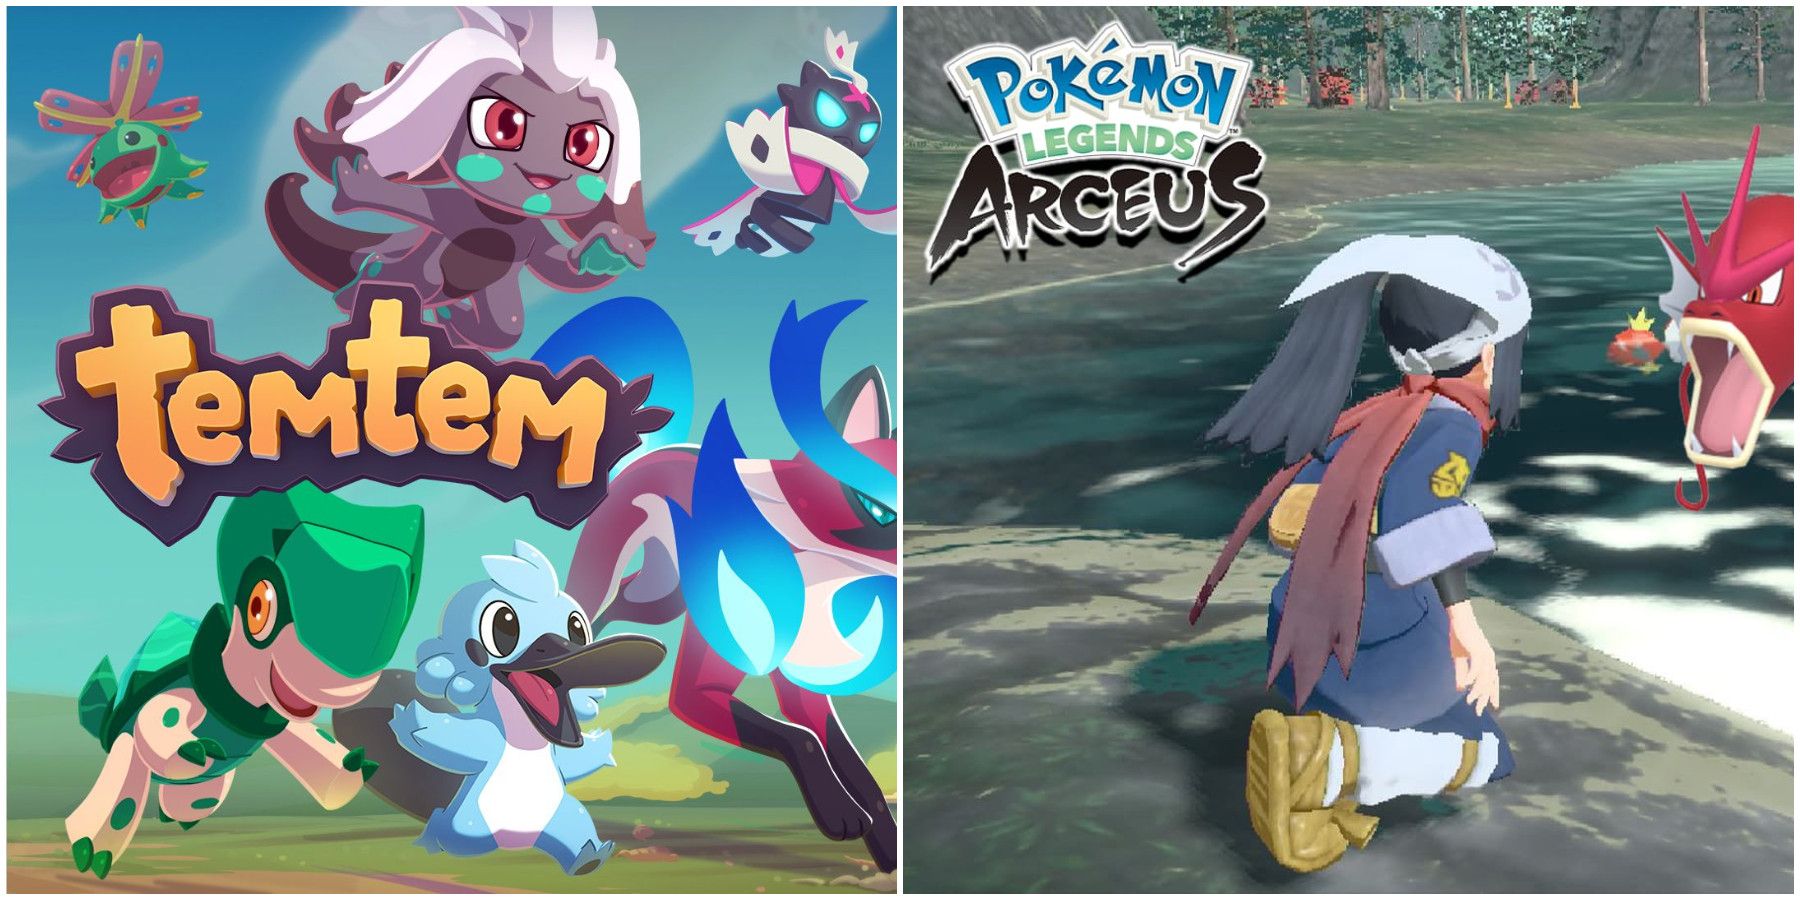 Temtem vs Pokemon Differences